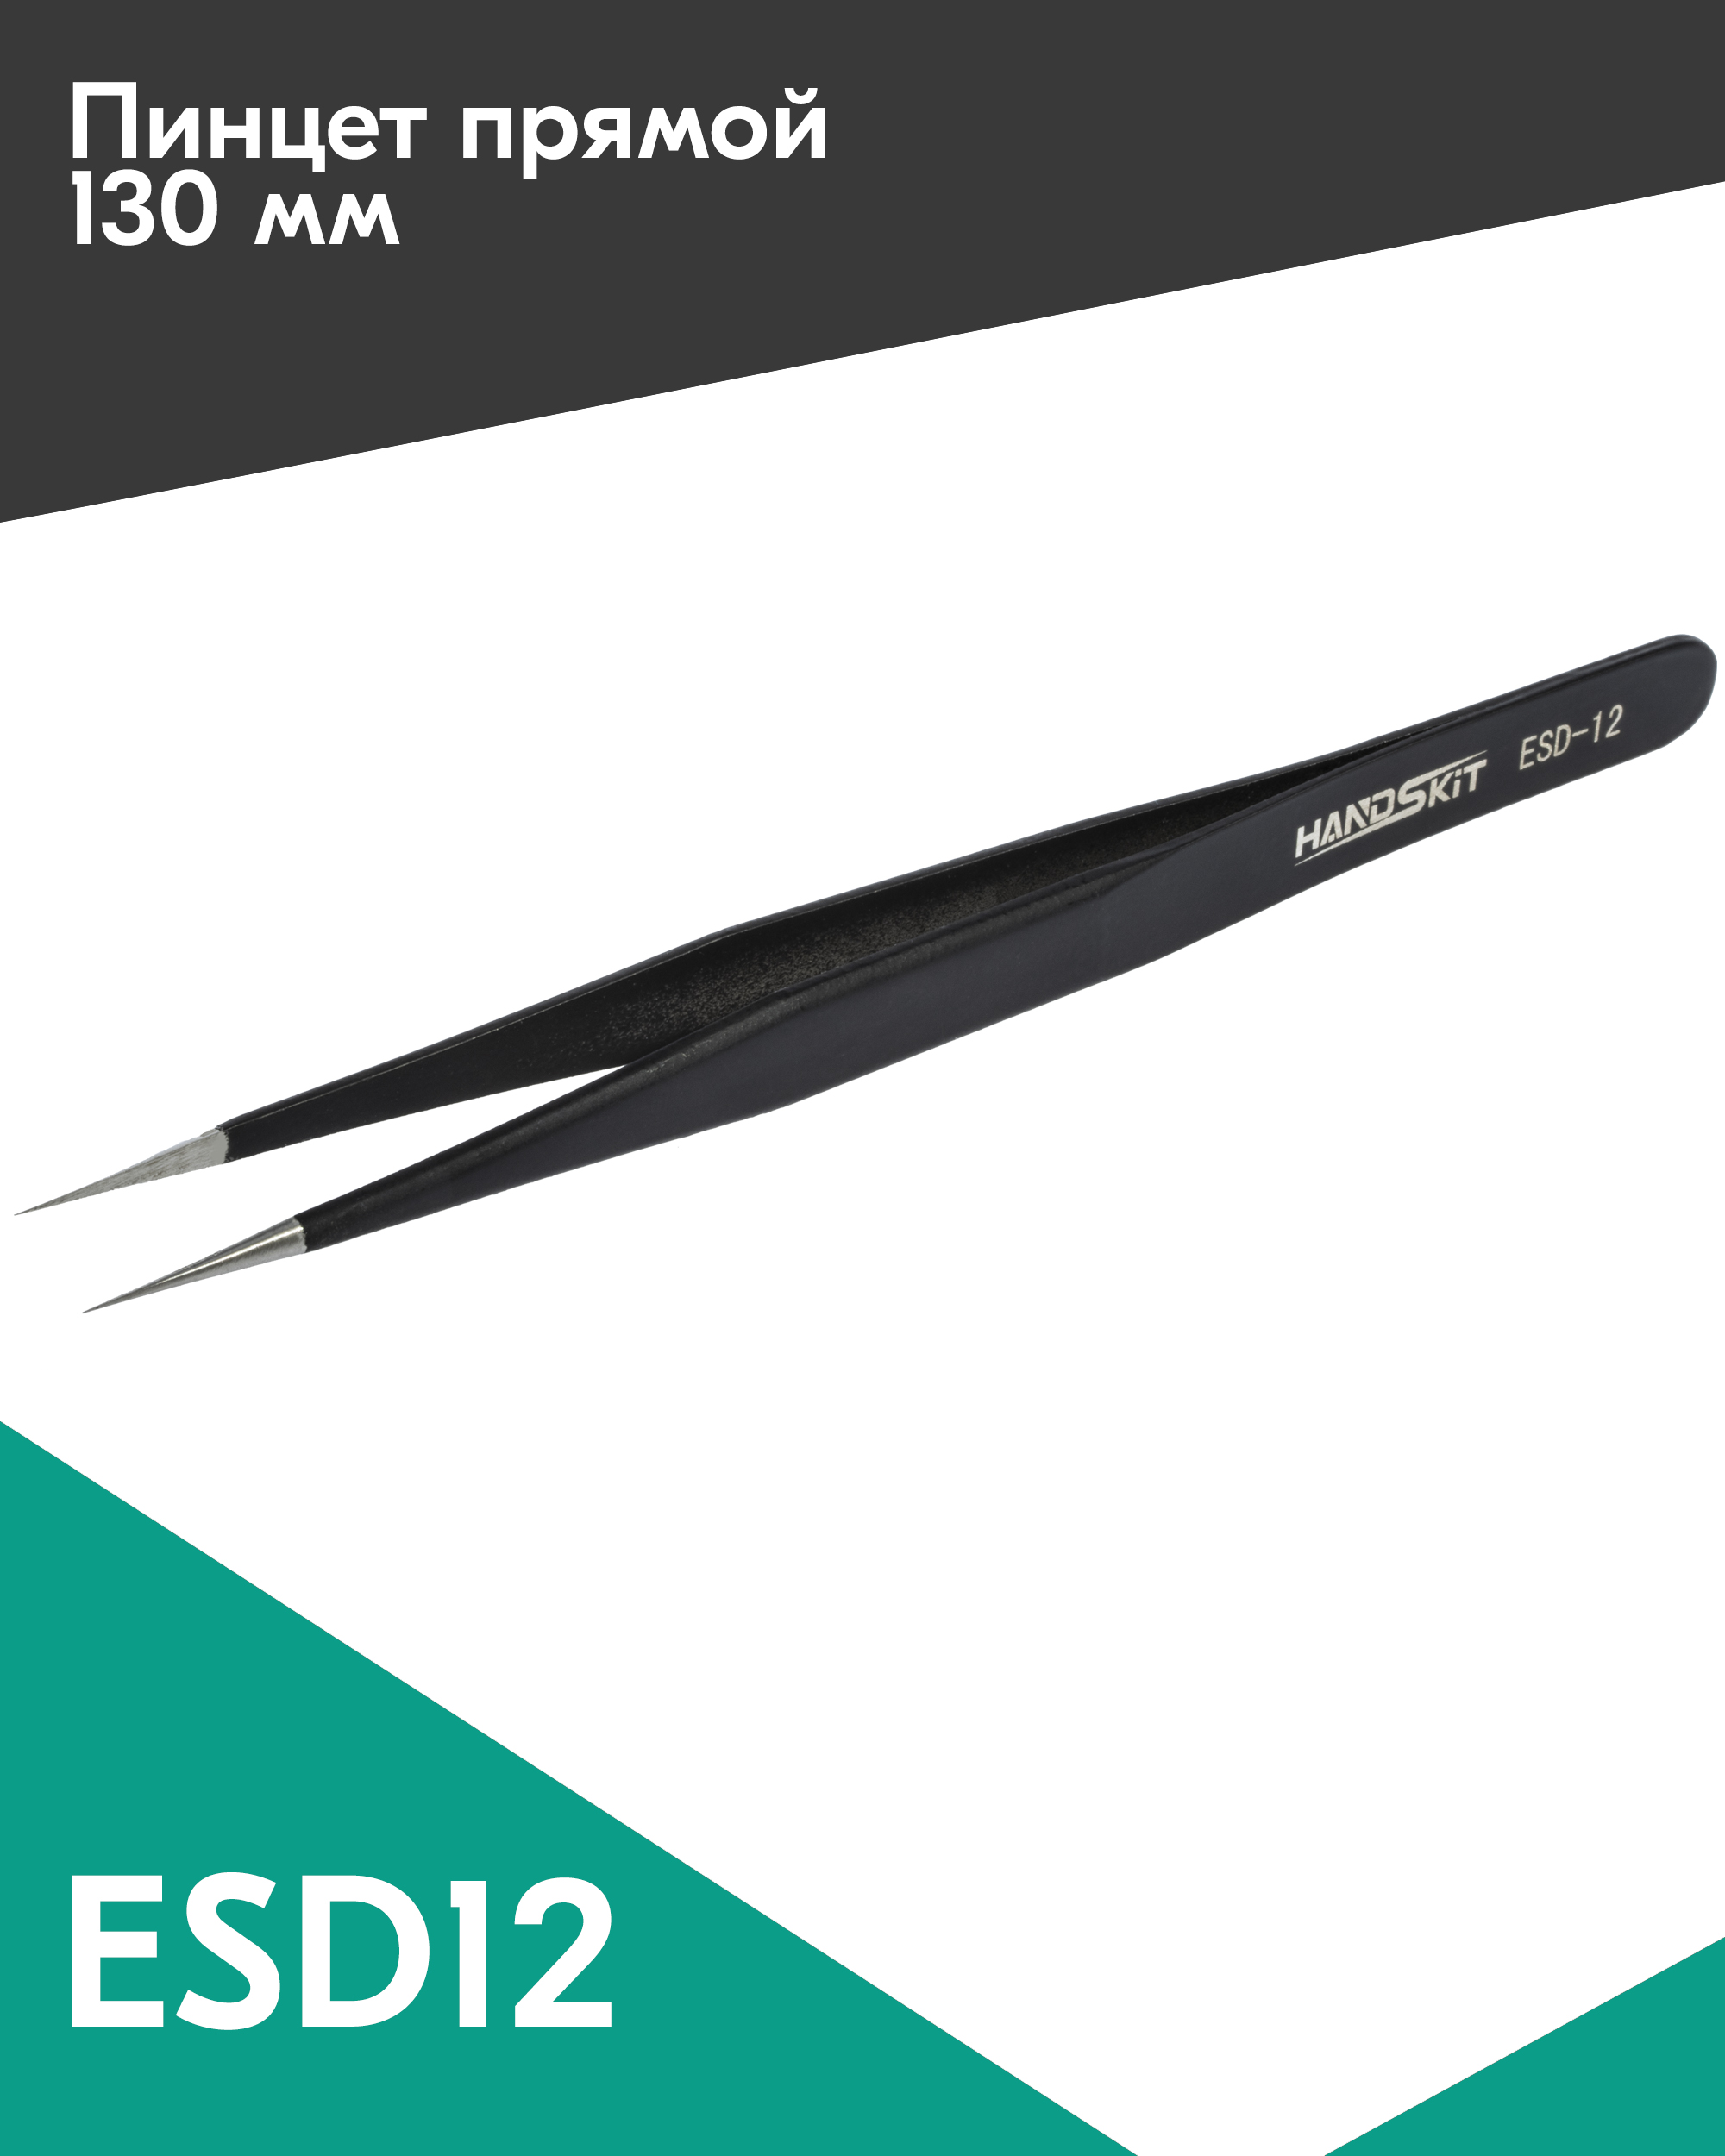 Пинцет диэлектрический HANDSKIT ESD12 (135 мм) пинцет прямой узкий 9 см серебристый